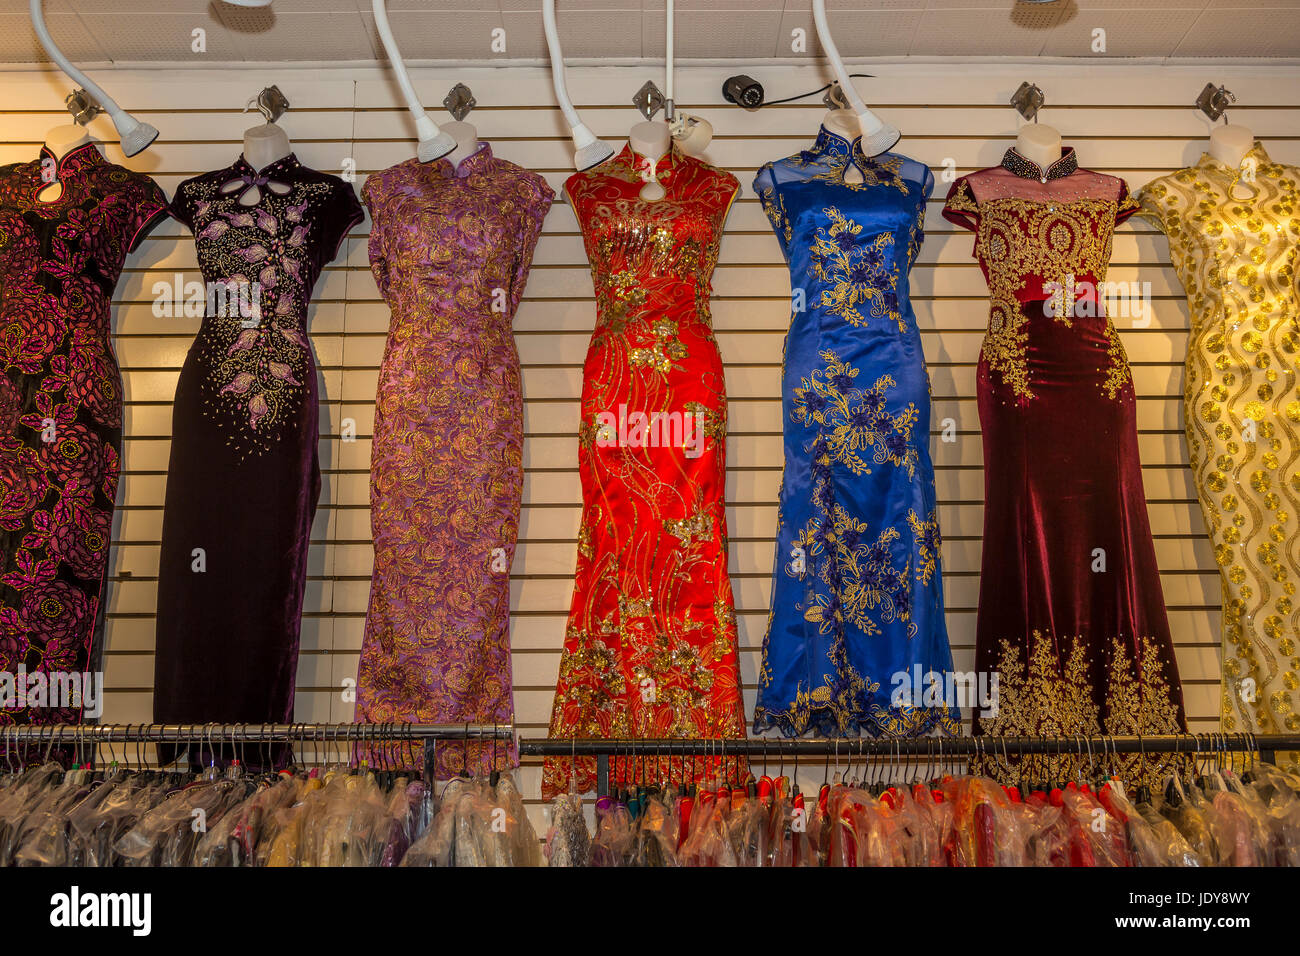 Vestidos de venta, exposición, tienda de ropa, Stockton Street, Chinatown, San Francisco, California, Estados Unidos Foto de stock